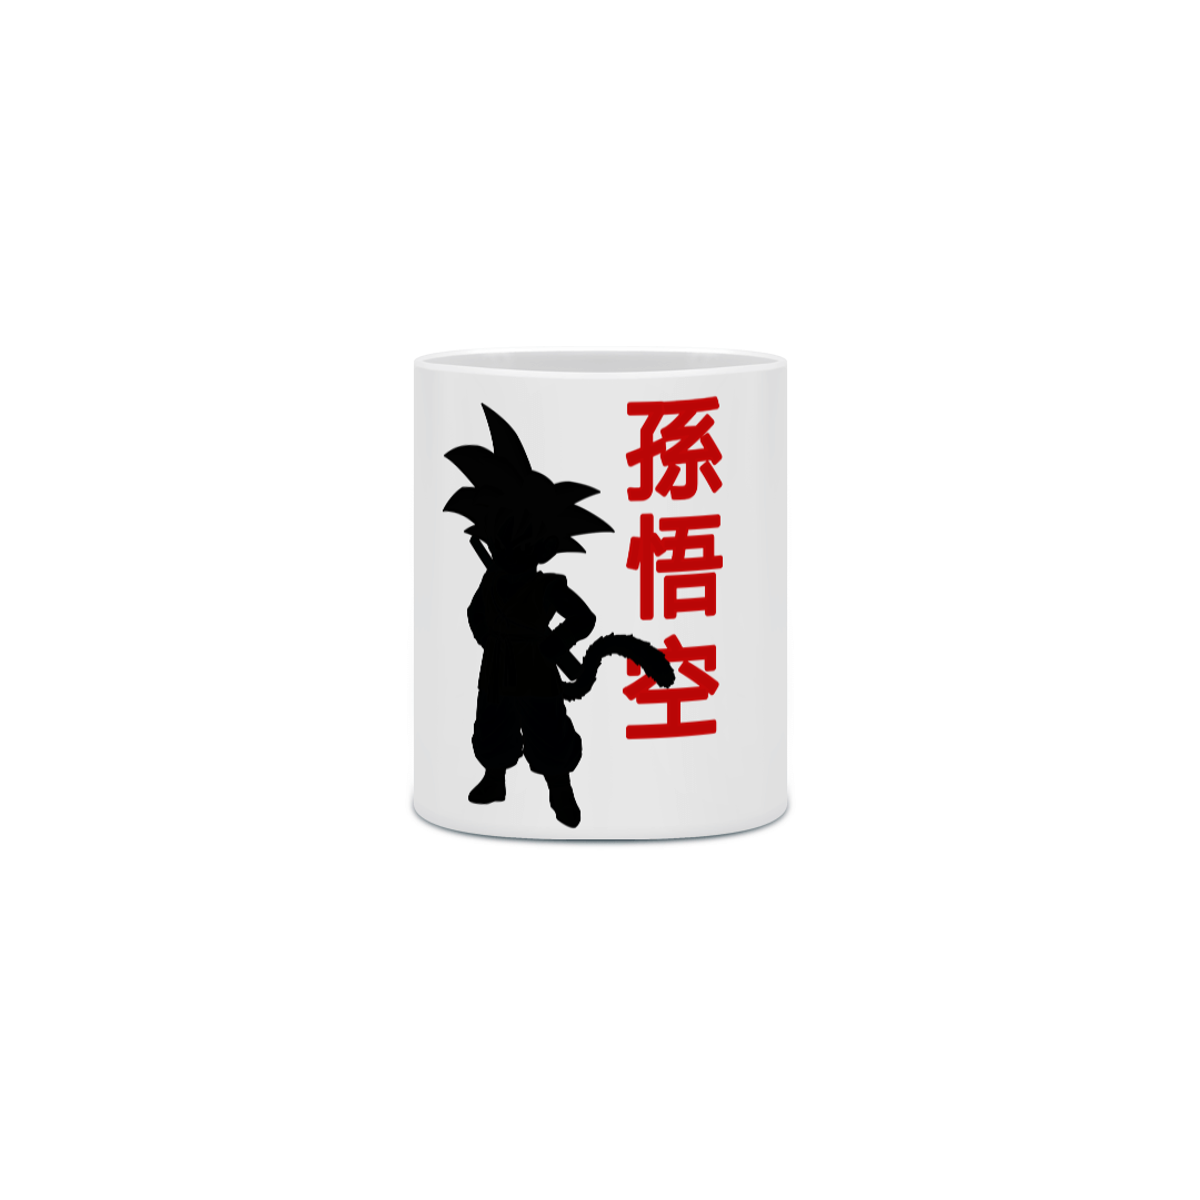 Nome do produto: Caneca Son Goku